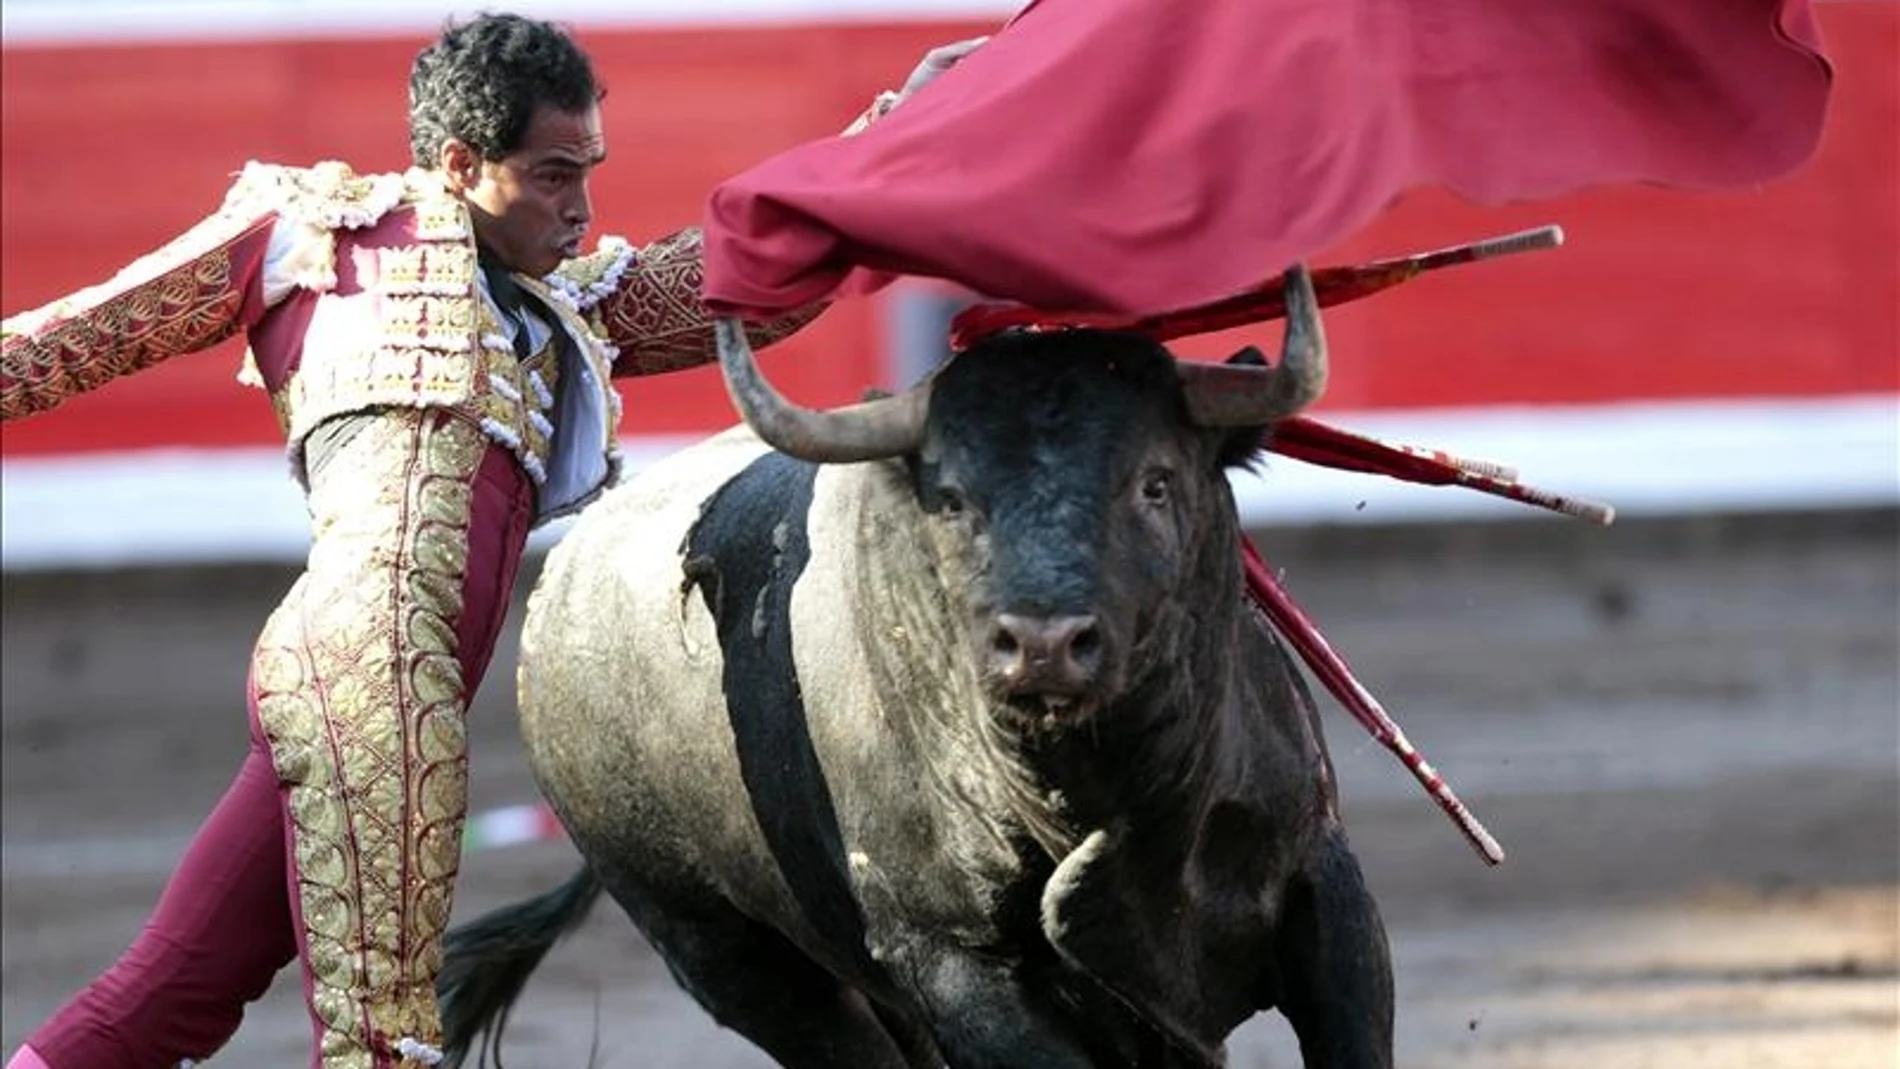 El matador de toros el colombiano, Luís Bolivar realiza un pase de pecho